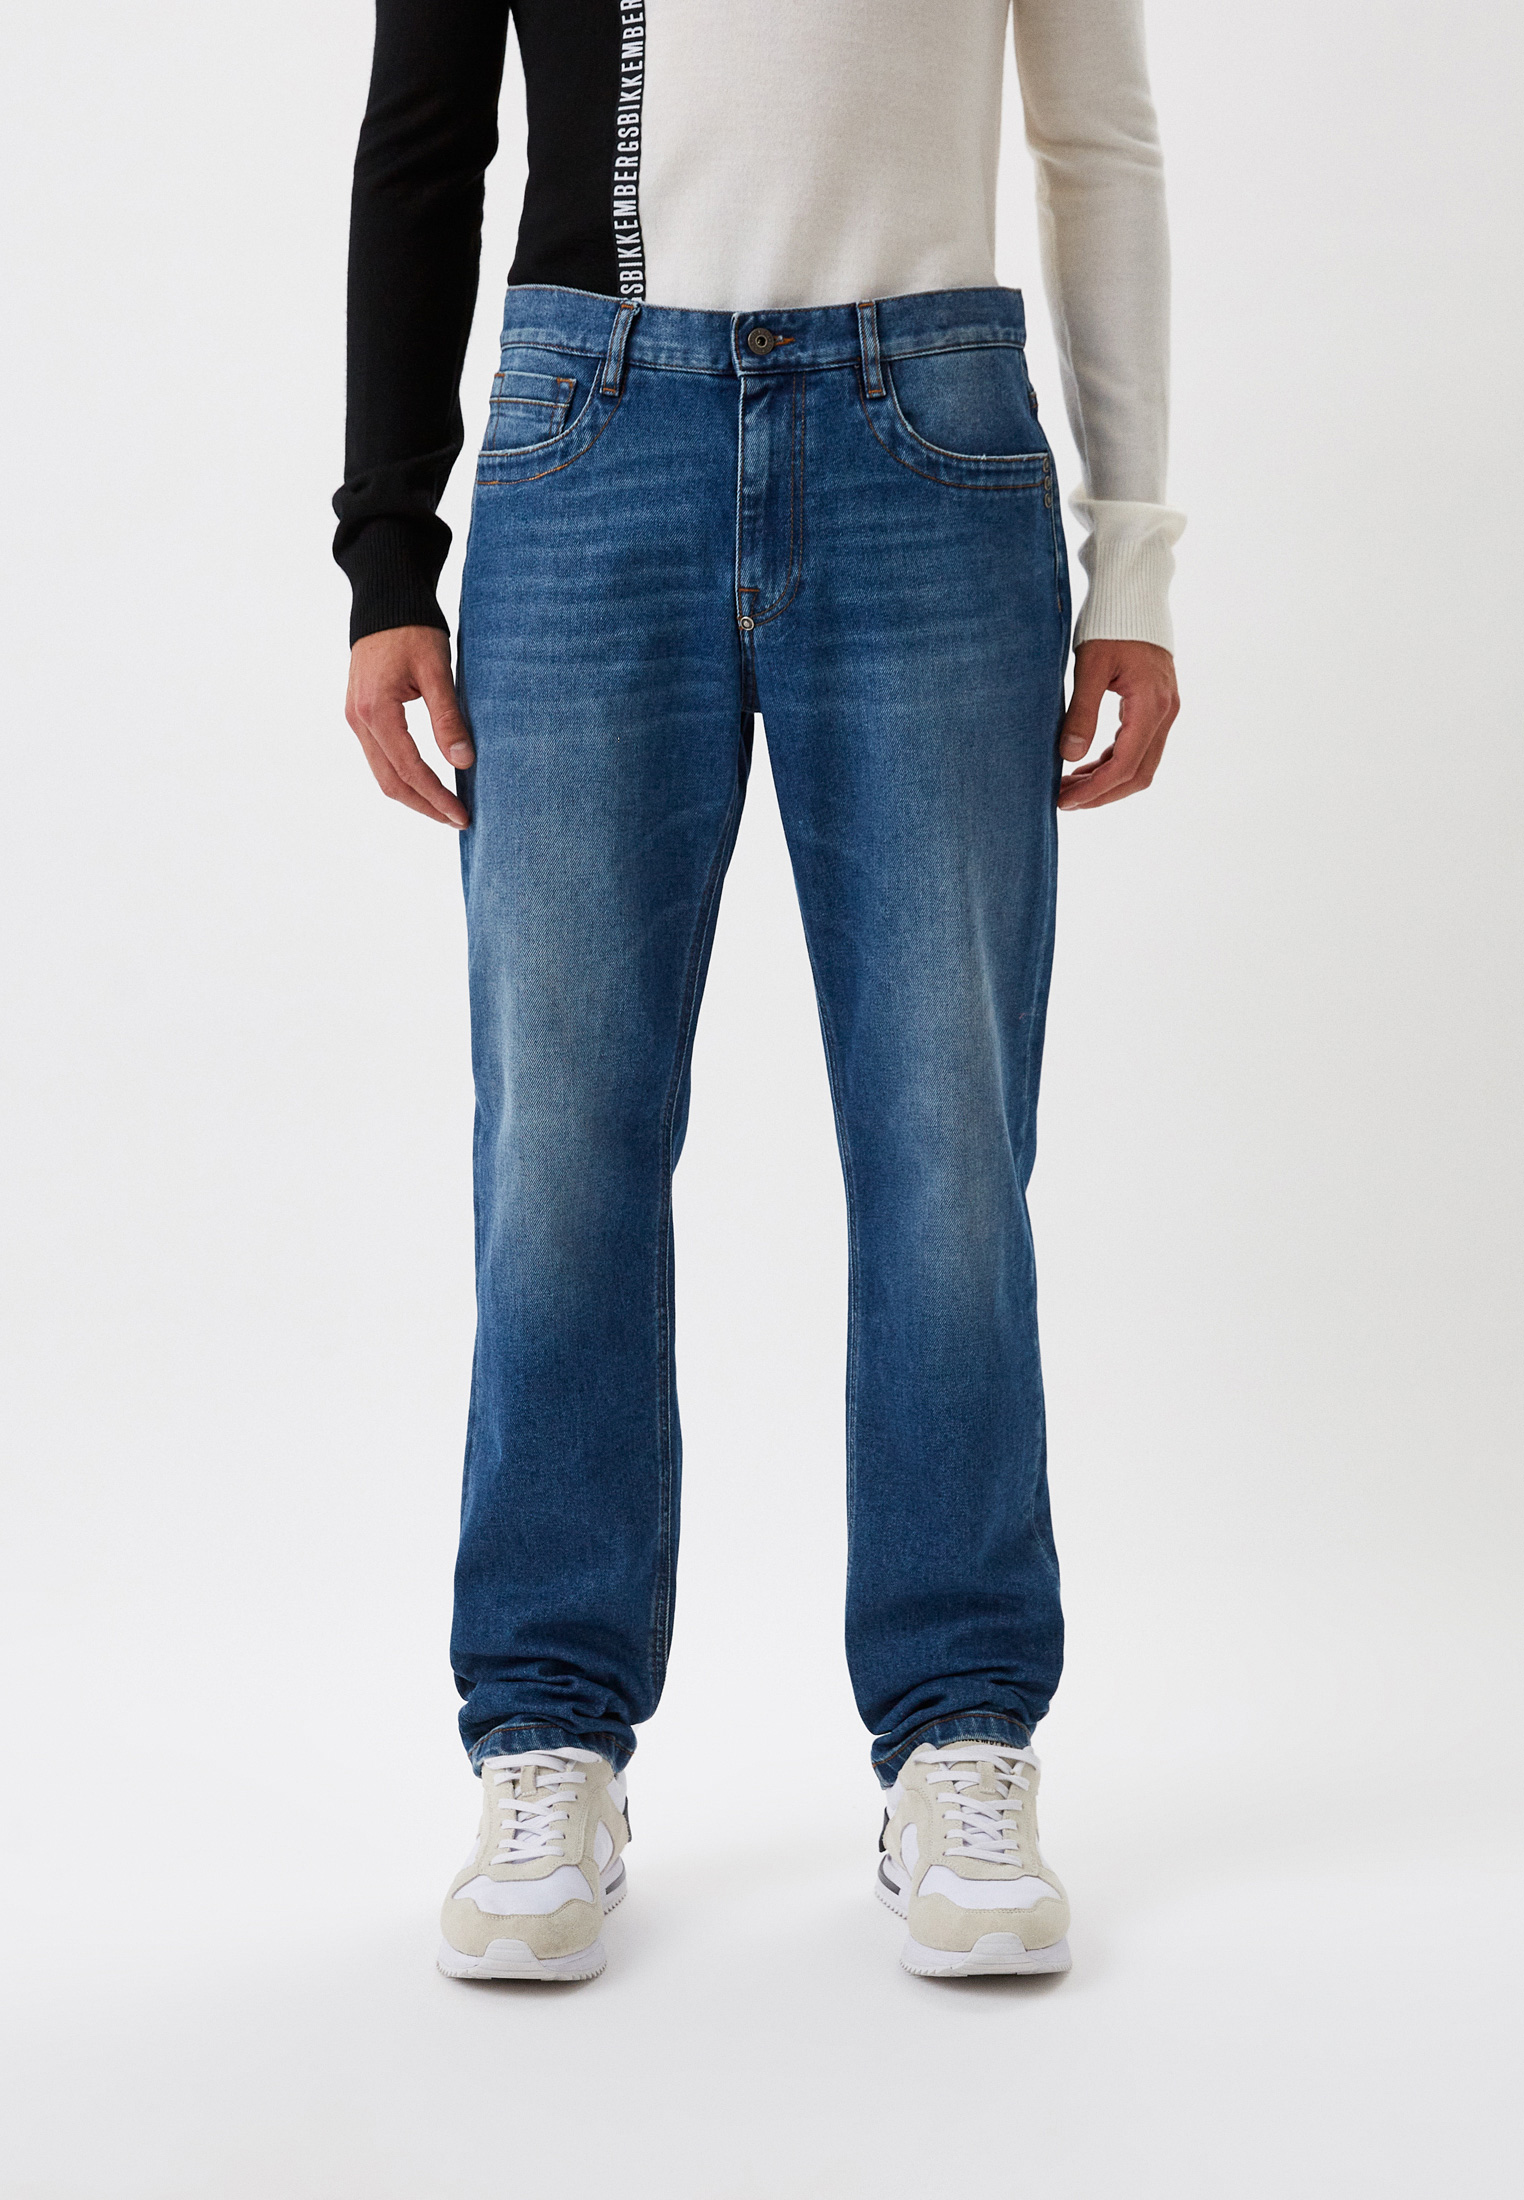 Мужские прямые джинсы Bikkembergs (Биккембергс) C Q 112 03 S 3570: изображение 1